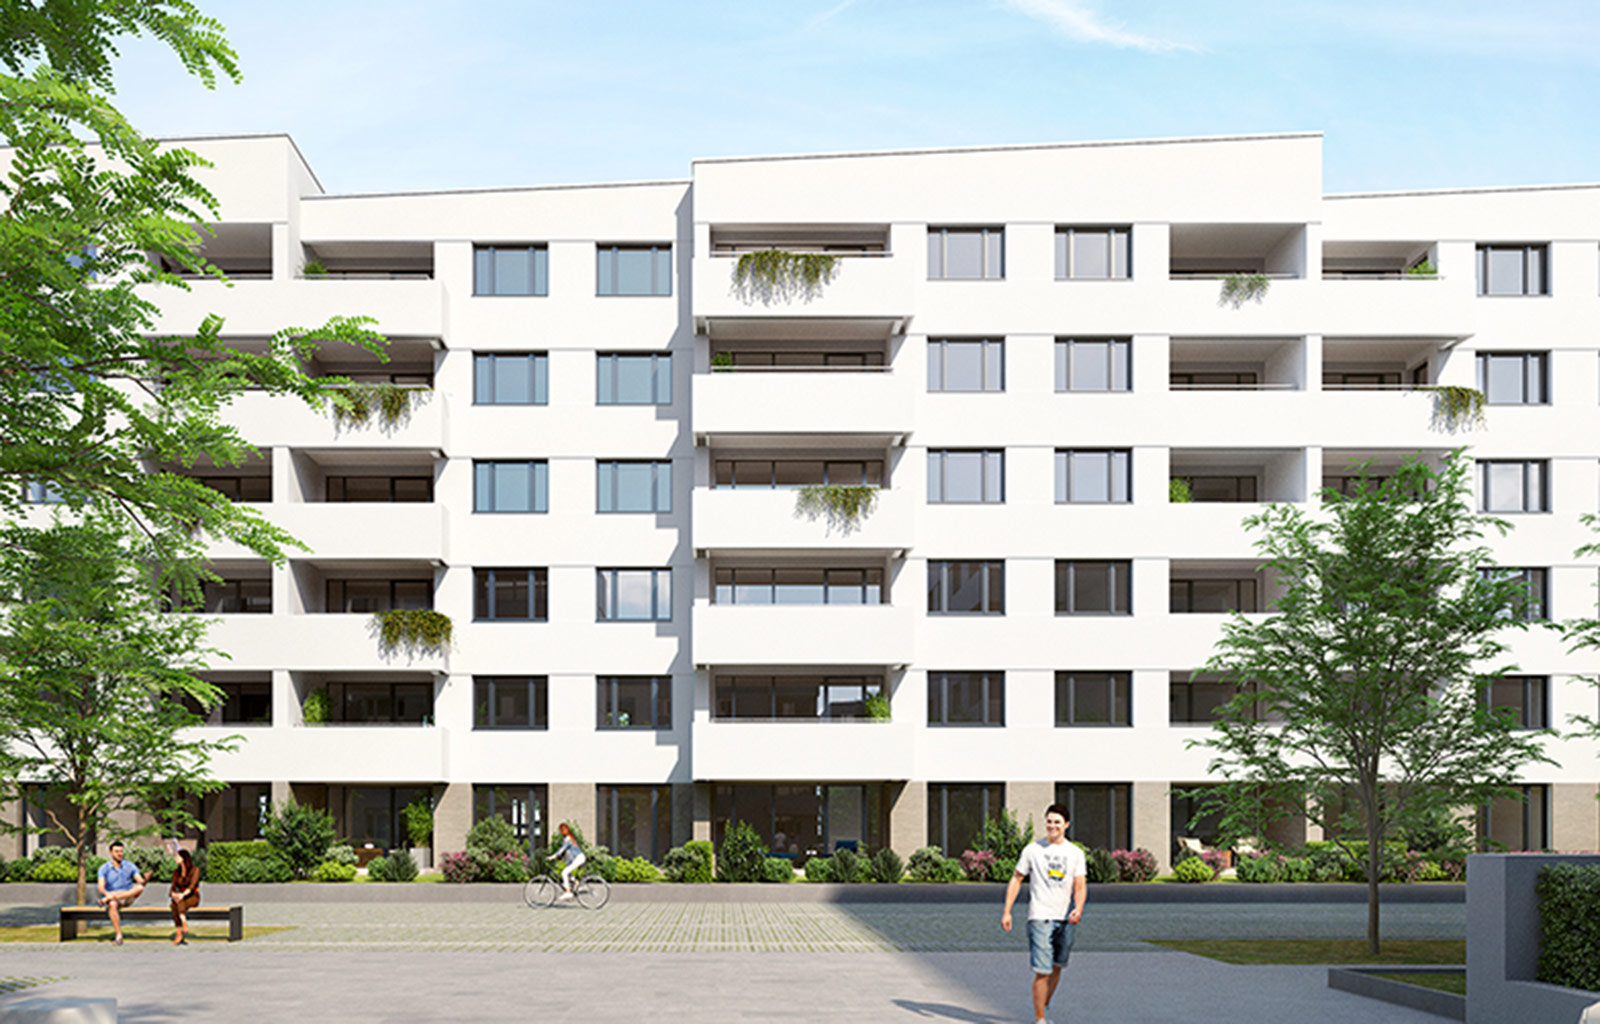 Neuer Wohnungsbau auf dem ehemaligen VAG-Areal Nürnberg